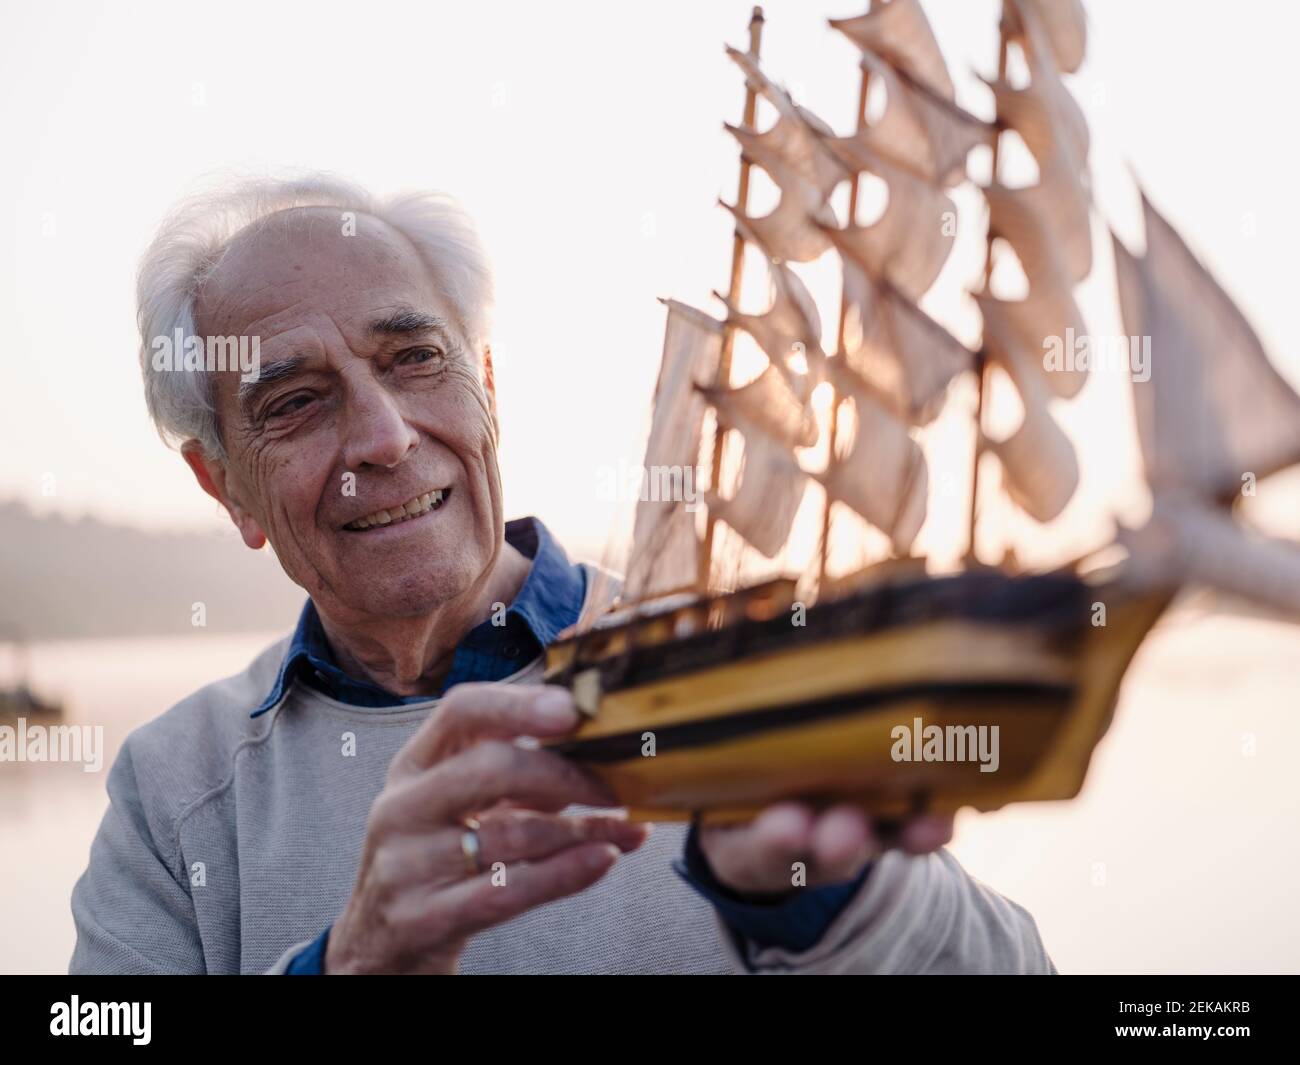 Lächelnder Mann, der Segelschiff Spielzeug untersucht, während er im Freien steht Stockfoto